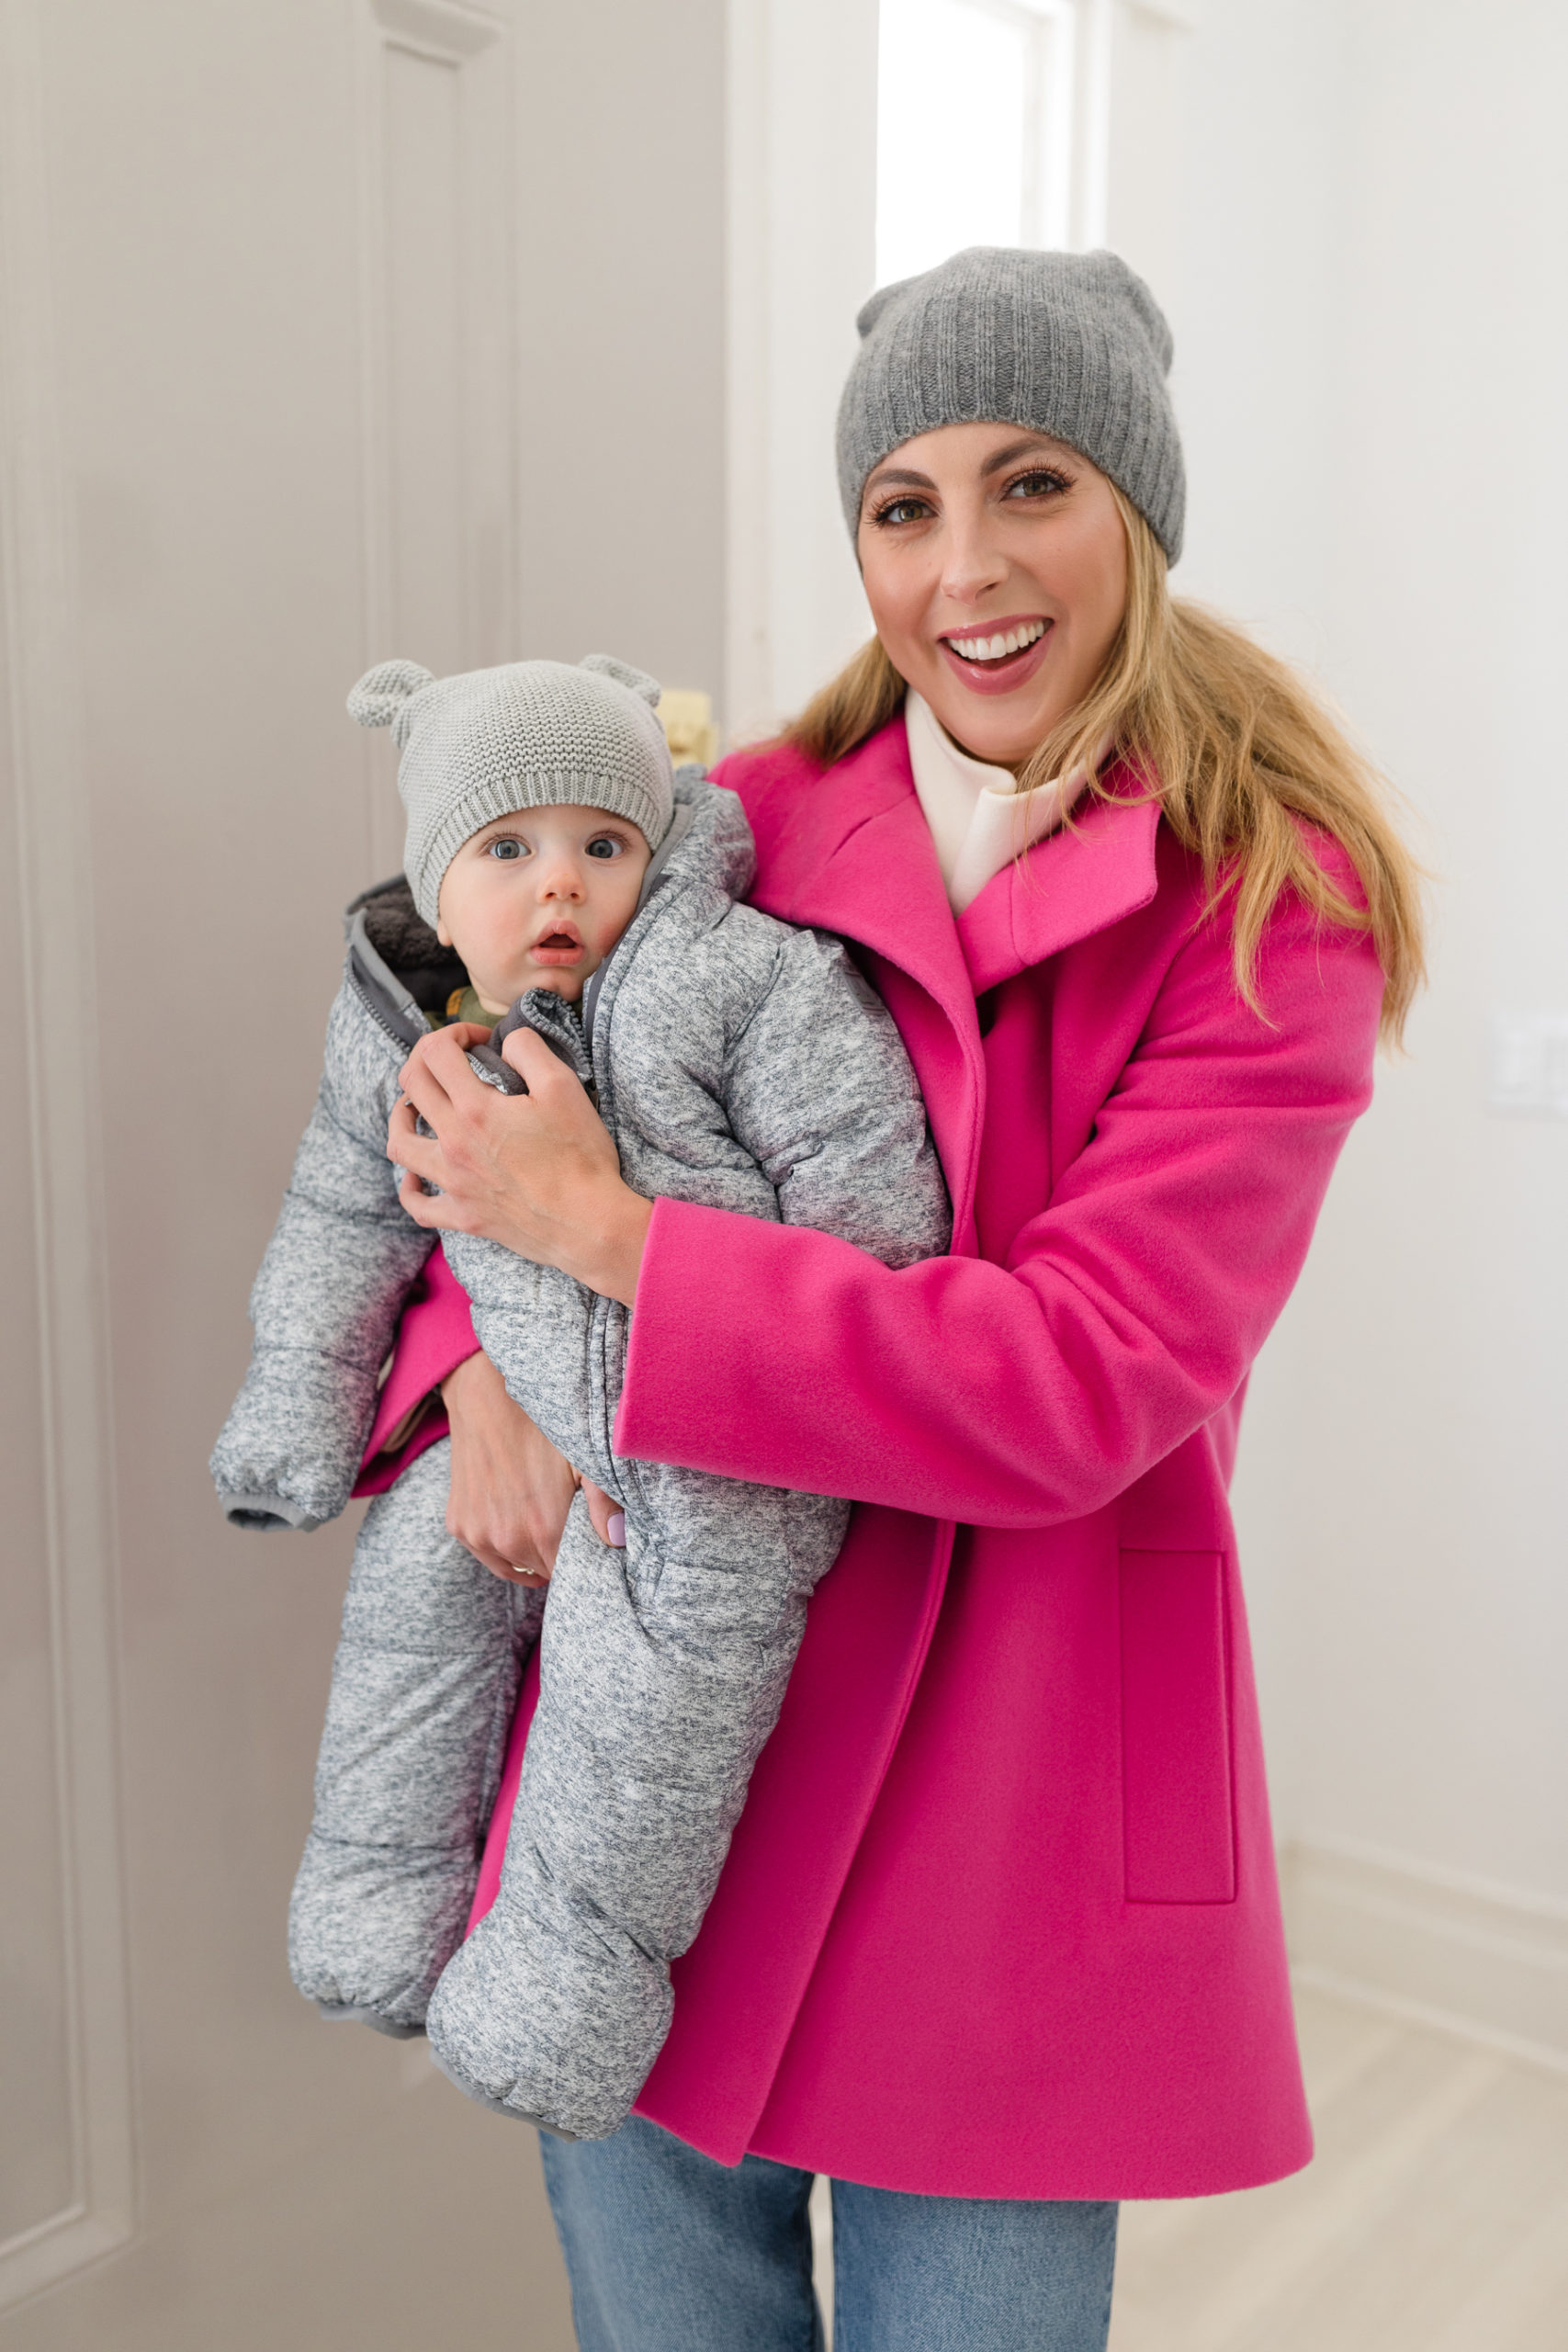 Eva Amurri shares her favorite winter gear for kids